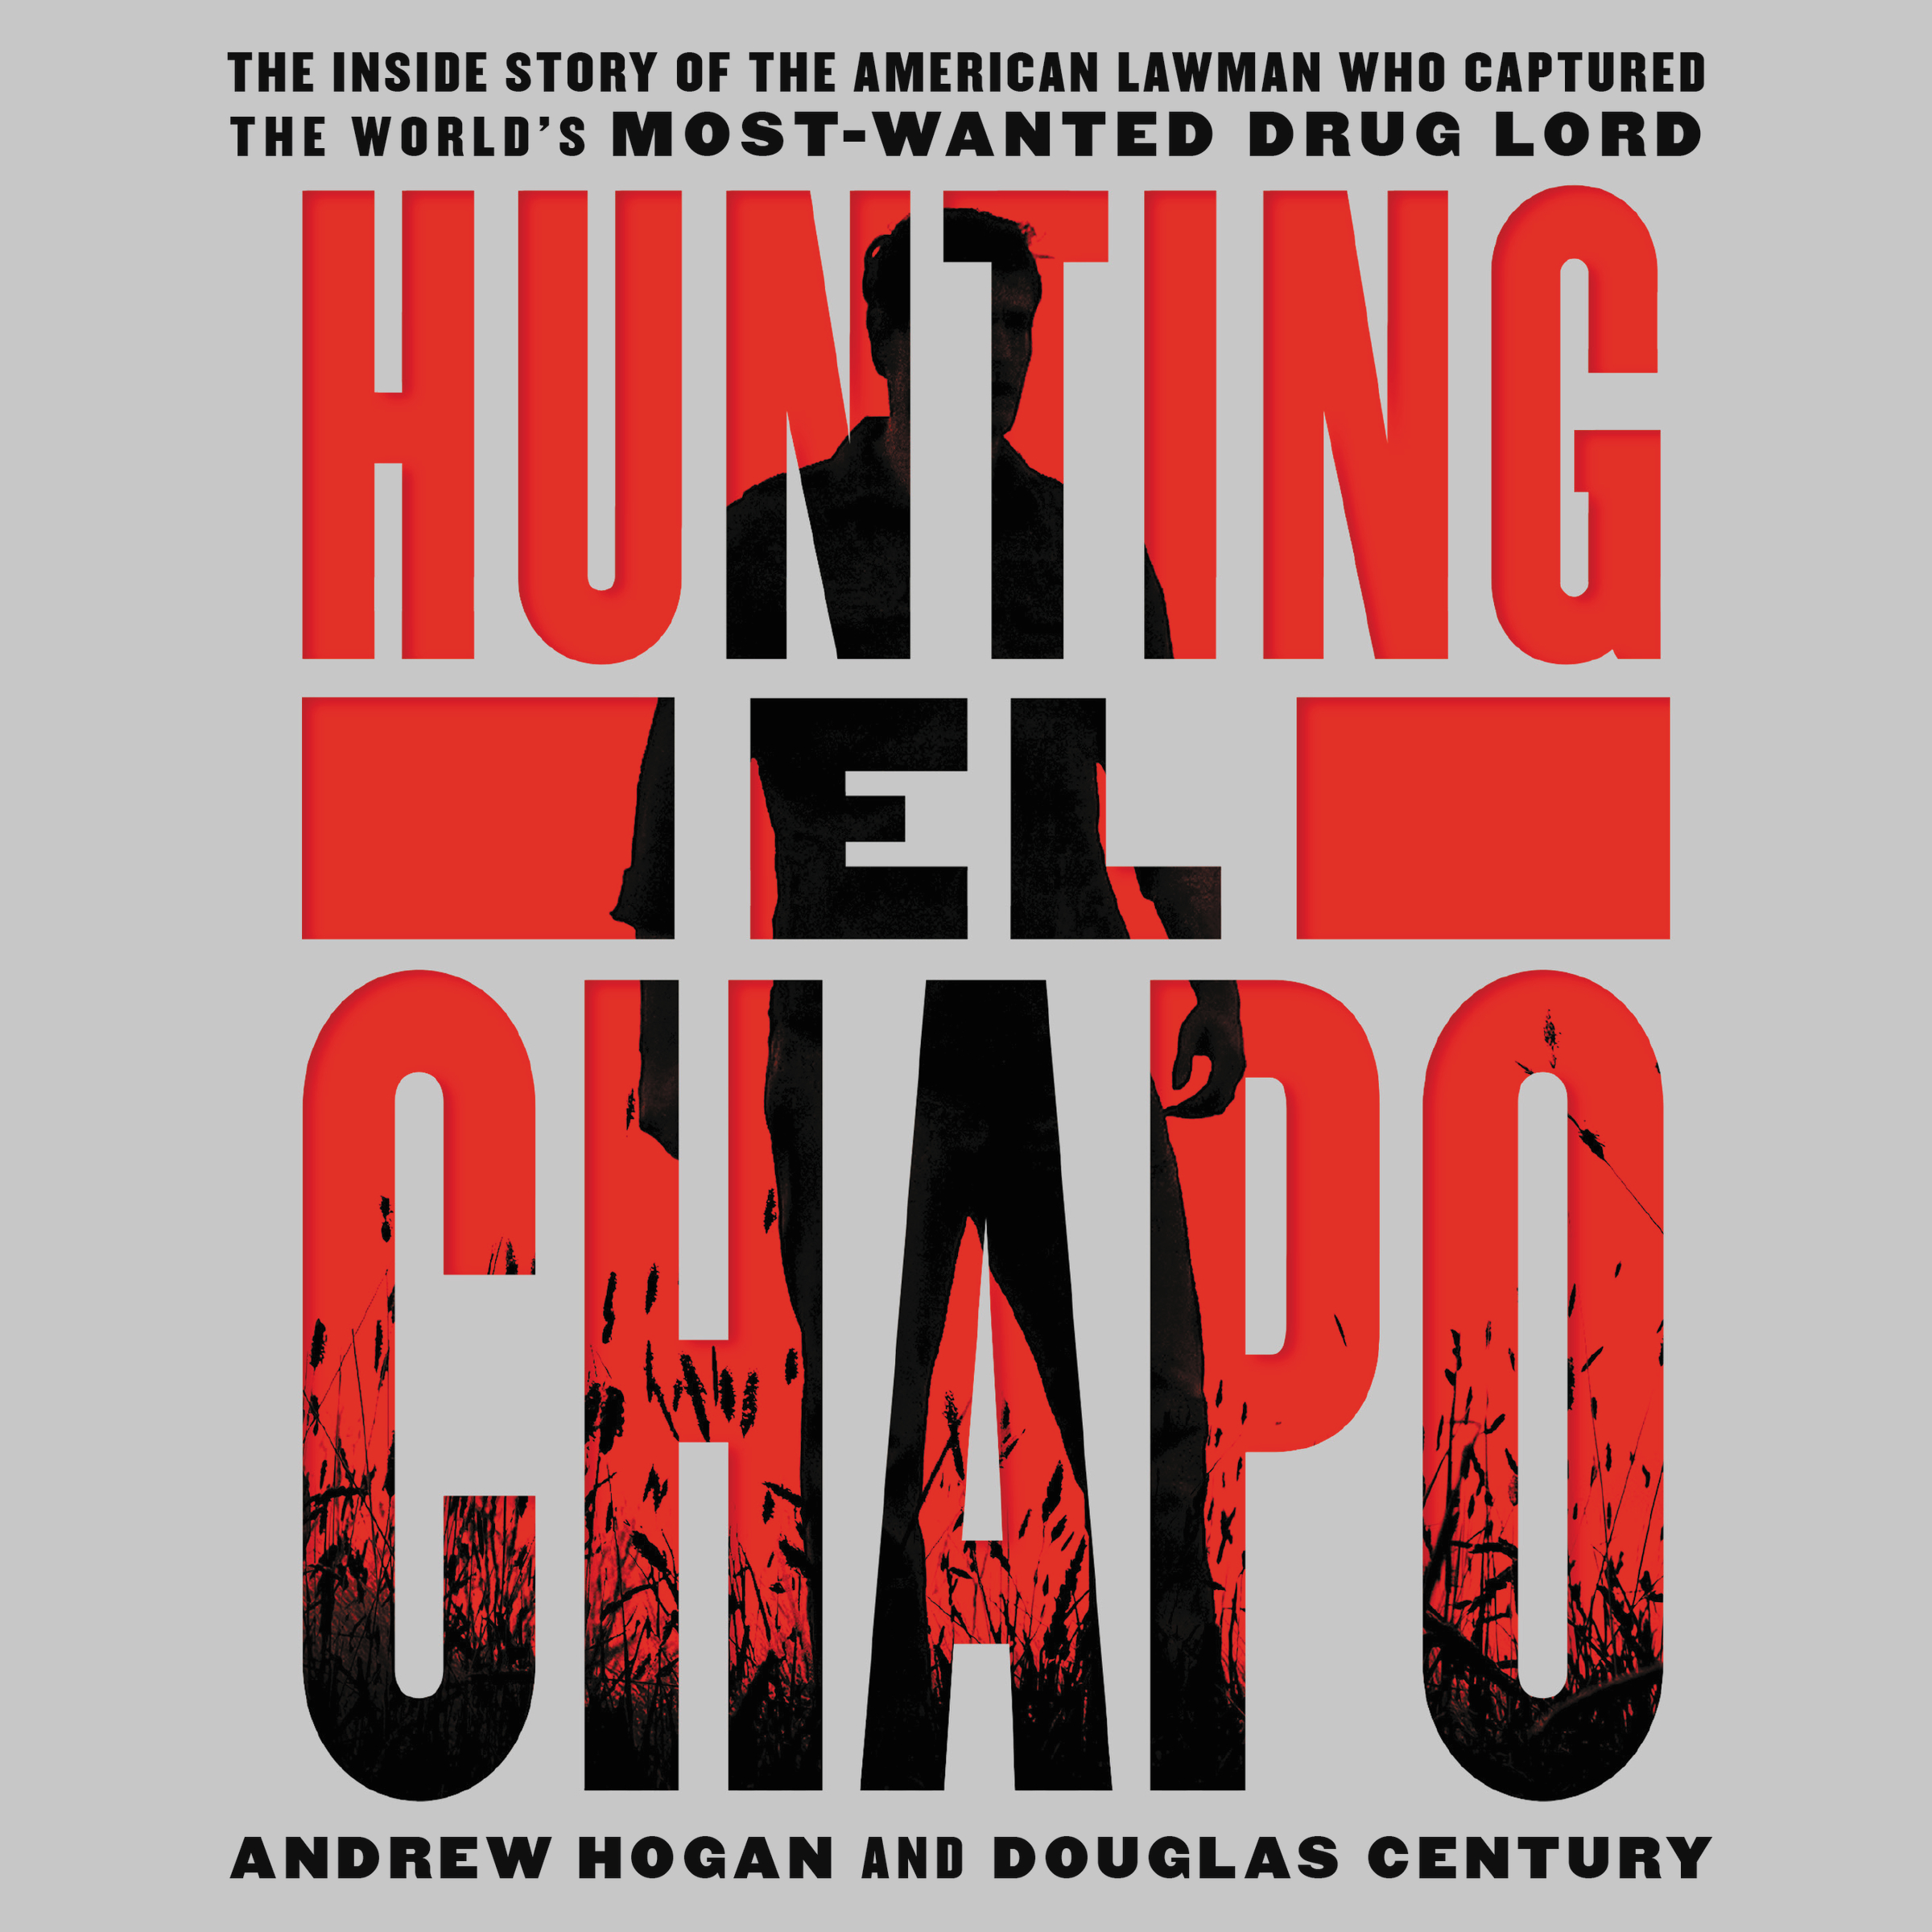 Hunting El Chapo.